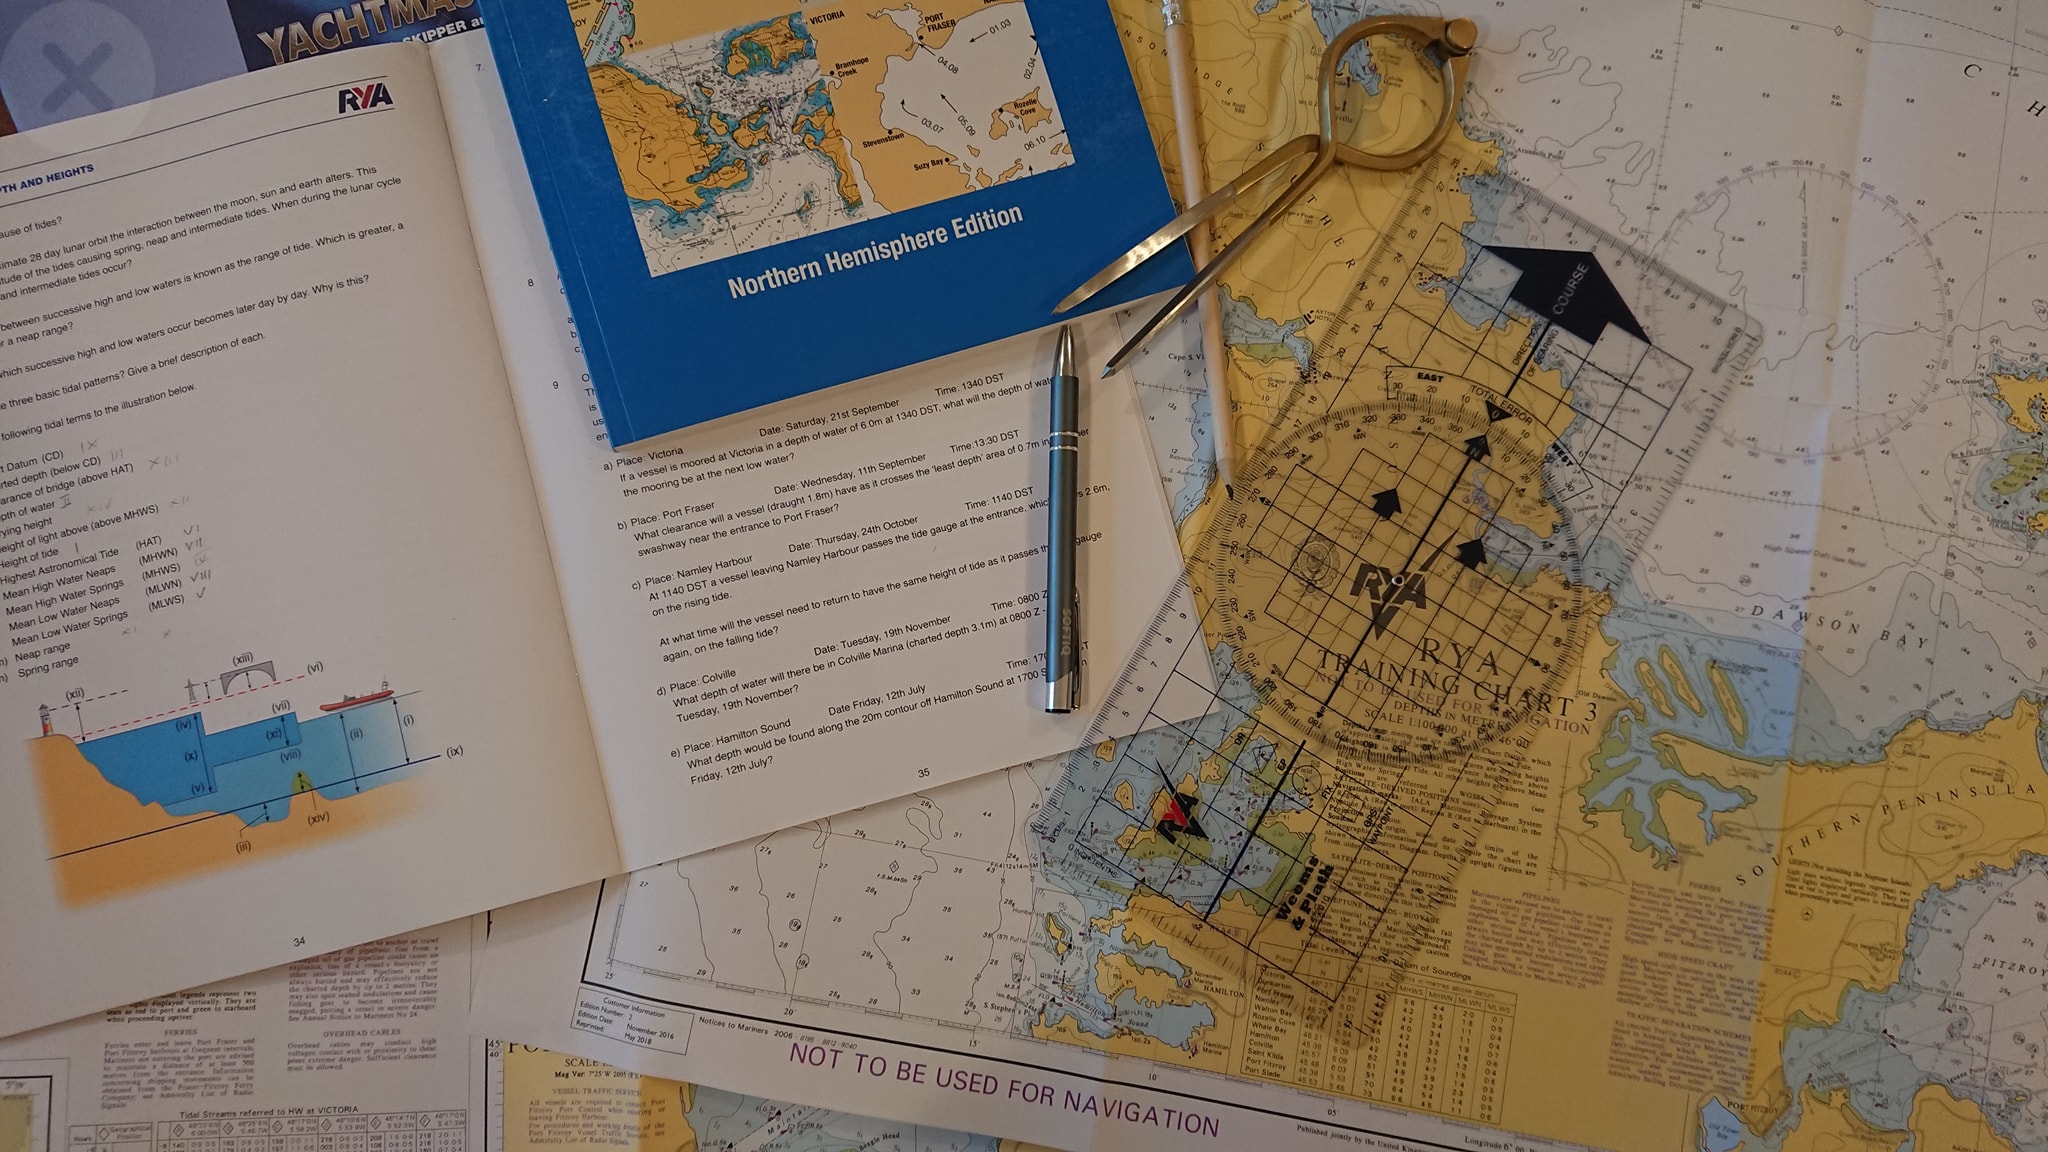 RYA Yachtmaster Offshore bogate materiały dydaktyczne w cenie w tym mapy, almanach oraz przyżądy nawigacyjne